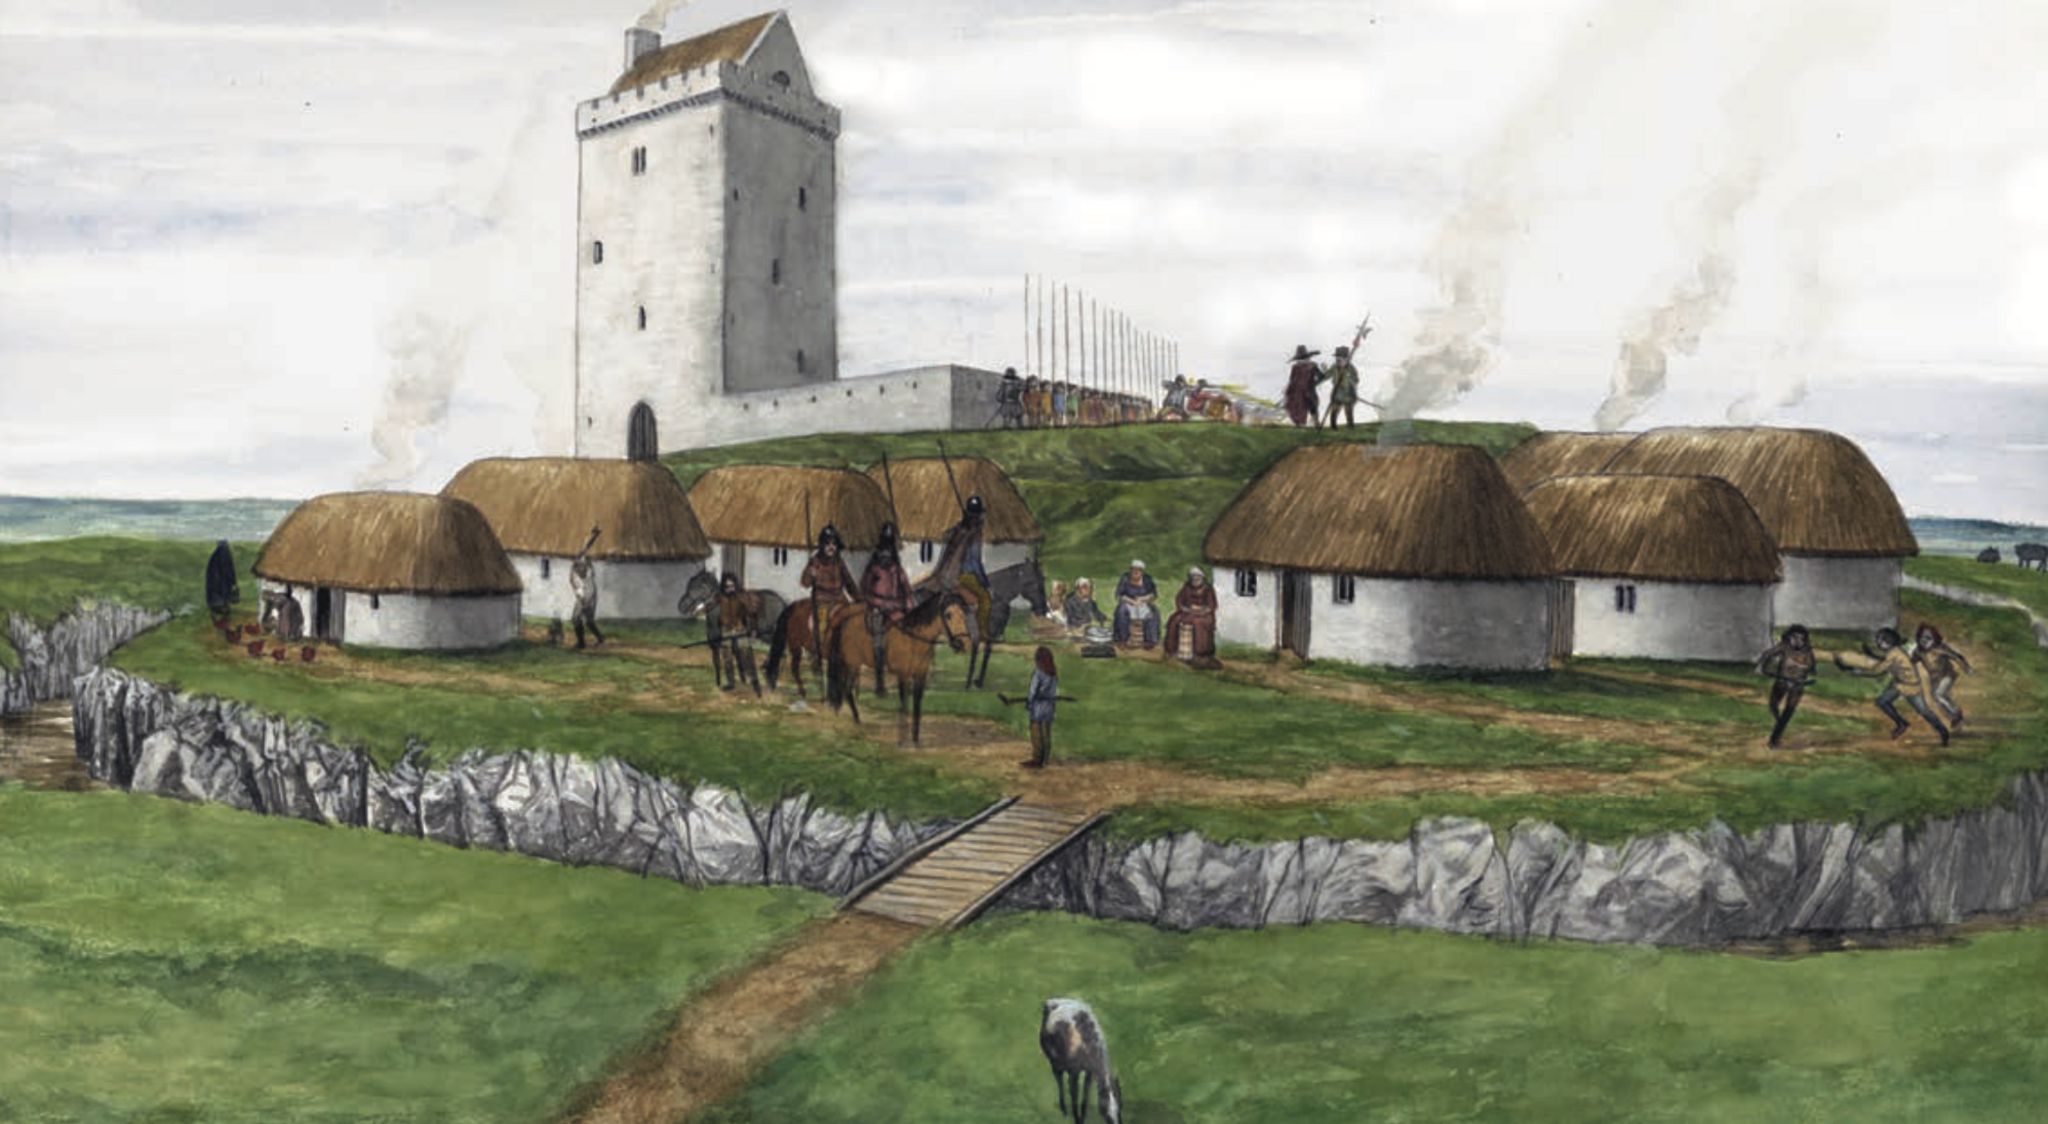 reconstruction drawing of Dungannon castle by Seán Ó Brogáin